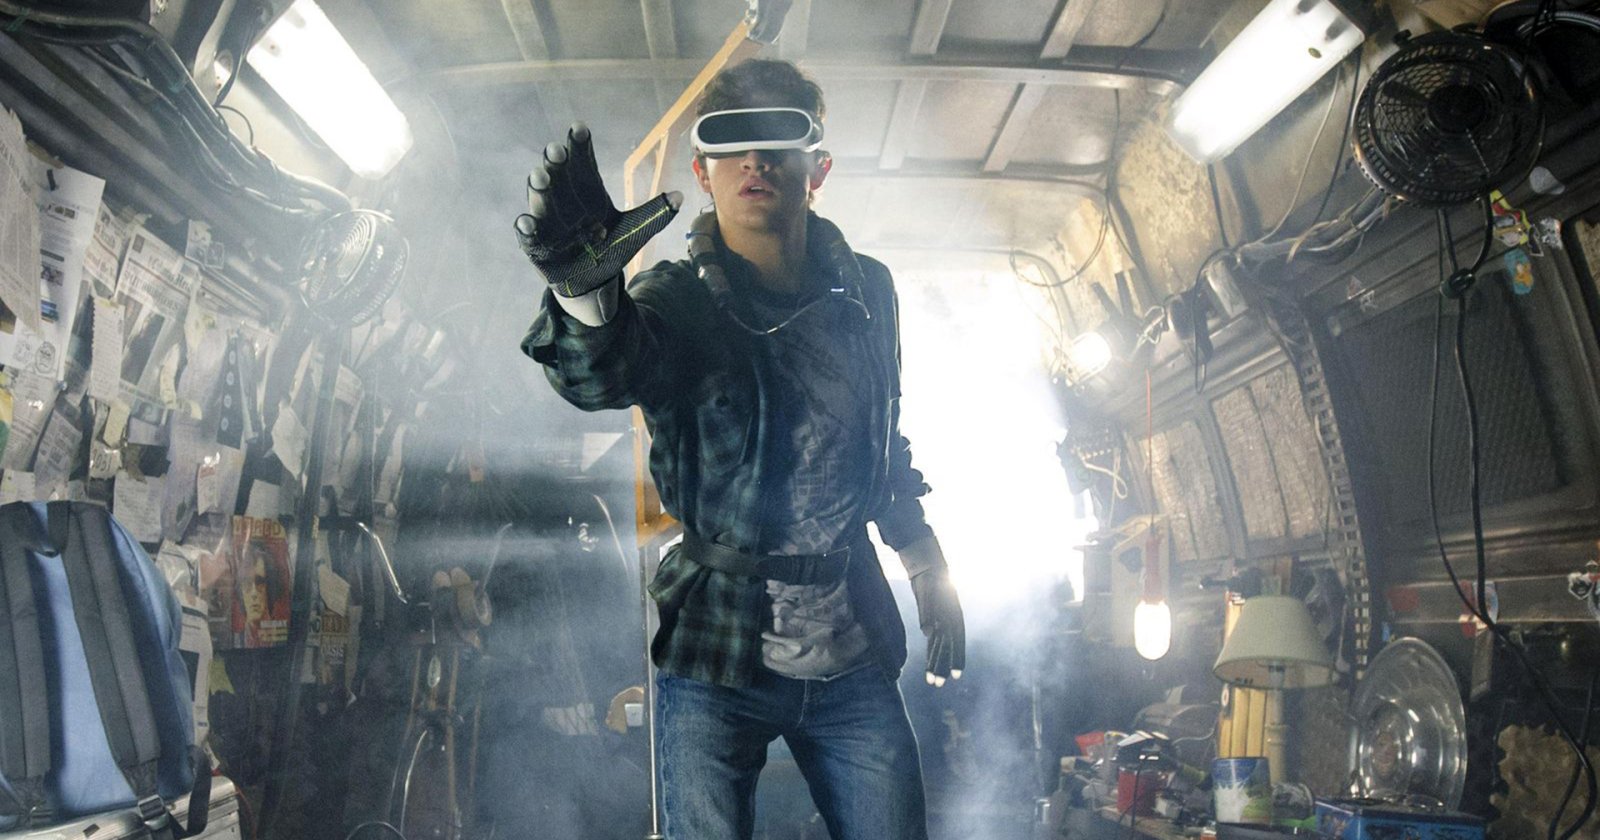 โลก VR ใน ‘Ready Player One’ กำลังจะกลายเป็นแพลตฟอร์ม Metaverse จริง: ทำโลกออนไลน์เสียงแตก